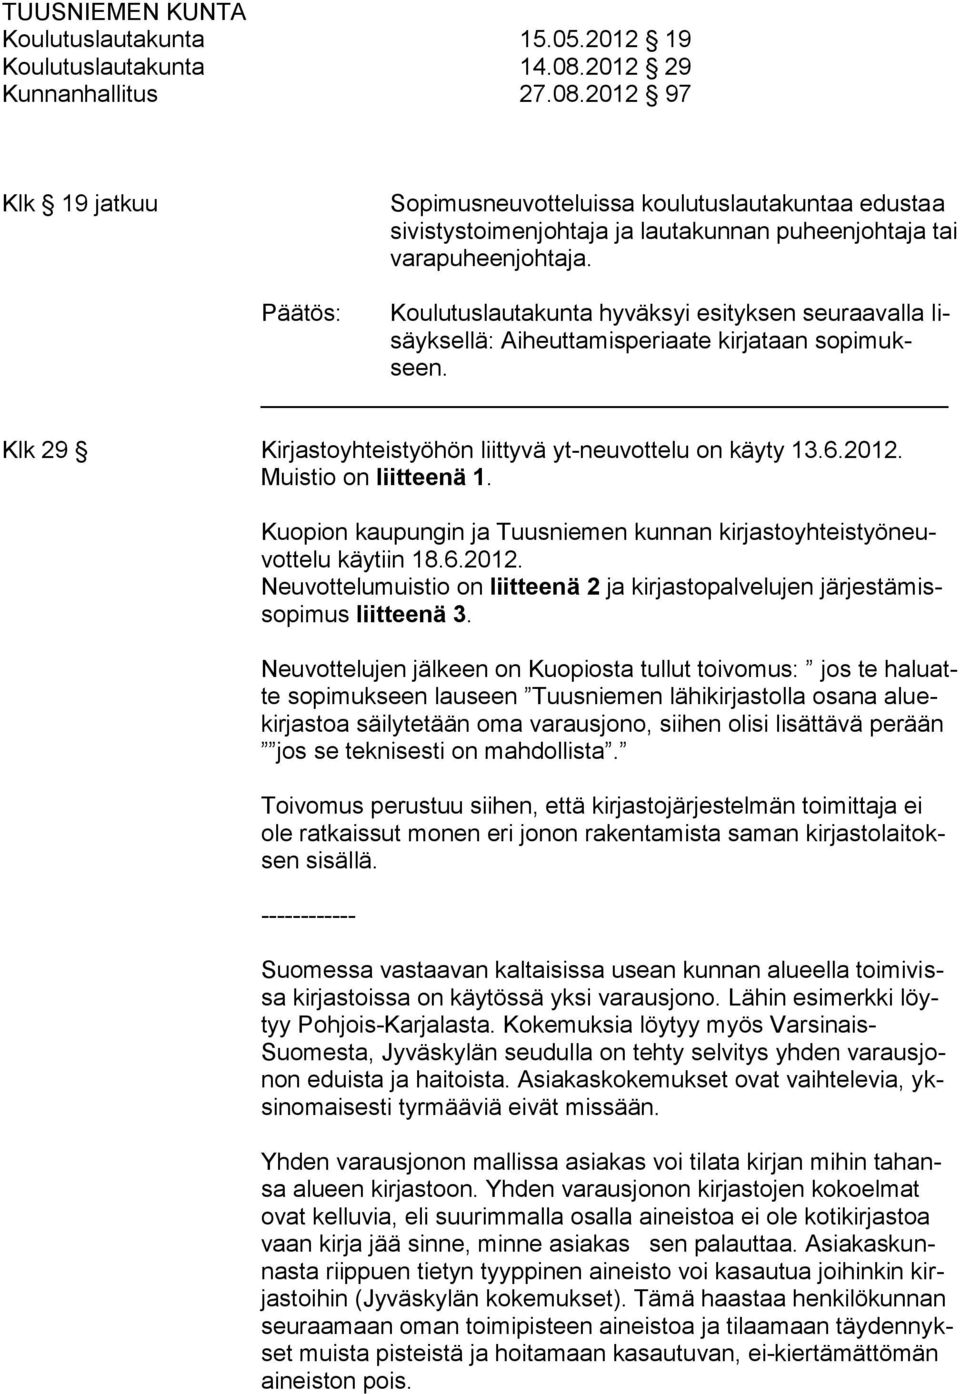 Koulutuslautakunta hyväksyi esityksen seuraavalla lisäyksellä: Aiheuttamisperiaate kirjataan sopimukseen. Klk 29 Kirjastoyhteistyöhön liittyvä yt-neuvottelu on käyty 13.6.2012. Muistio on liitteenä 1.